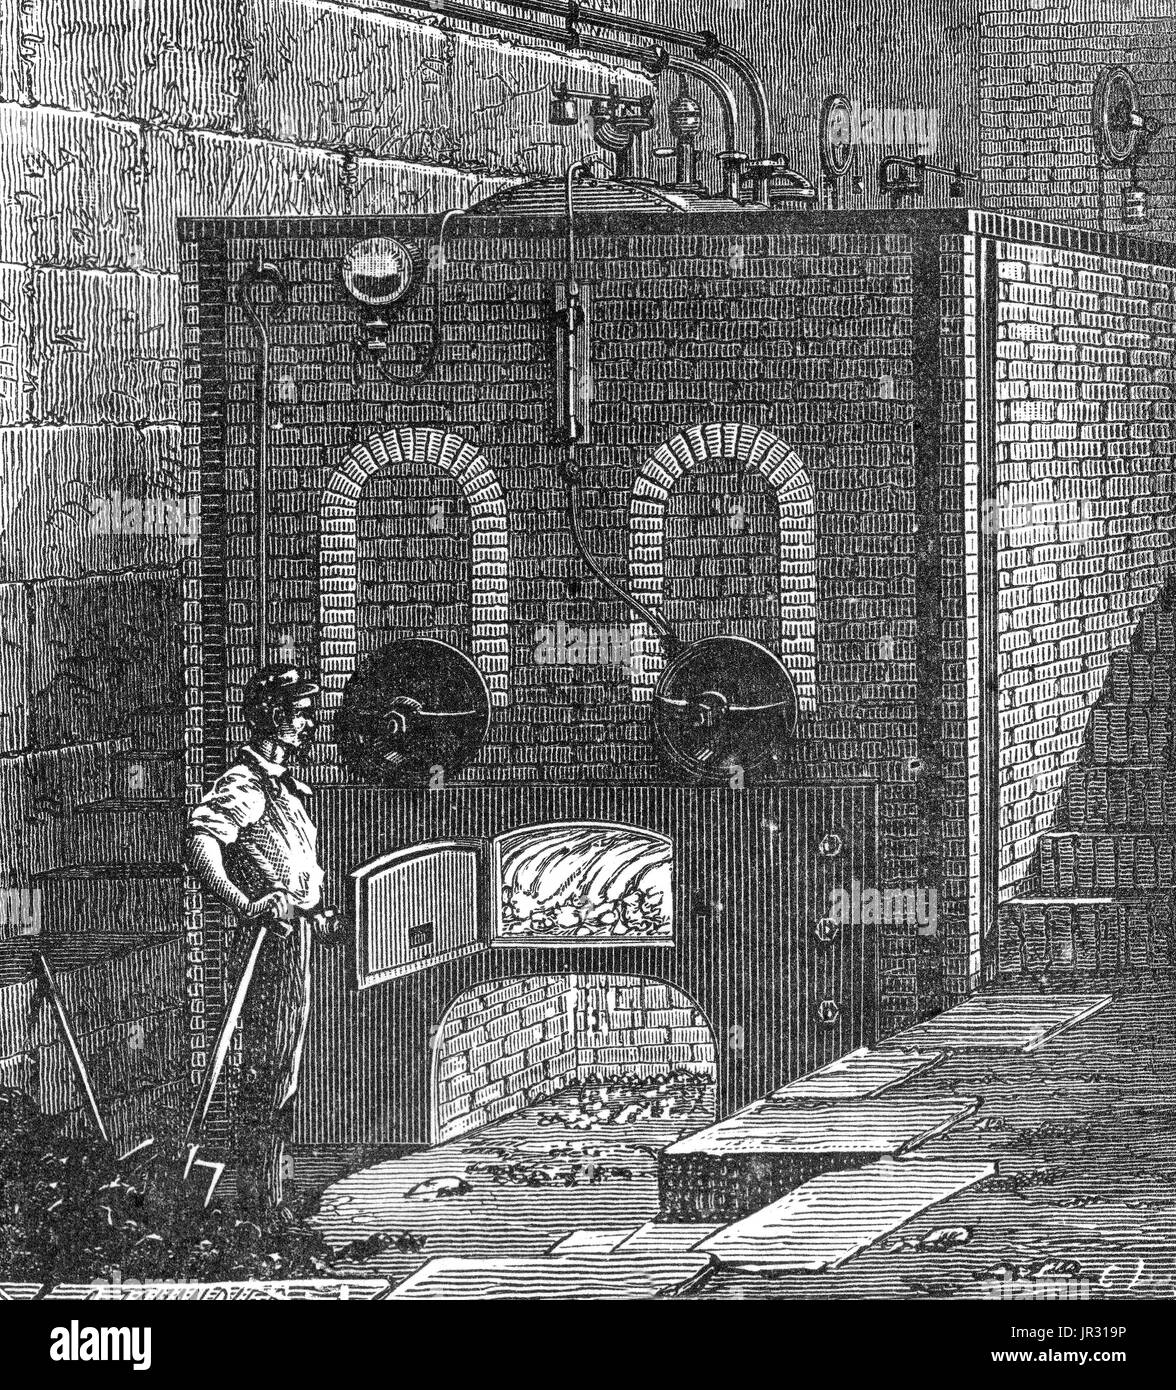 Außenansicht des Kessels einer Dampfmaschine. Die erste aufgezeichnete rudimentäre Dampfmaschine war der Aeolipile von Heron von Alexandria im 1. Jahrhundert n. Chr. beschrieben. Ab dem 12. Jahrhundert, wurden eine Anzahl von Dampf betriebene Geräte experimentiert oder vorgeschlagen. 1712 wurde Newcomens atmosphärischen Motor der erste kommerziell erfolgreiche Motor mit dem Prinzip der Kolben und Zylinder, die die grundlegende Art Dampfmaschine bis ins frühe 20. Jahrhundert verwendet wurde. Während der industriellen Revolution, Dampfmaschinen begann, Wasser-und Windkraft zu ersetzen, und schließlich wurde die Stockfoto